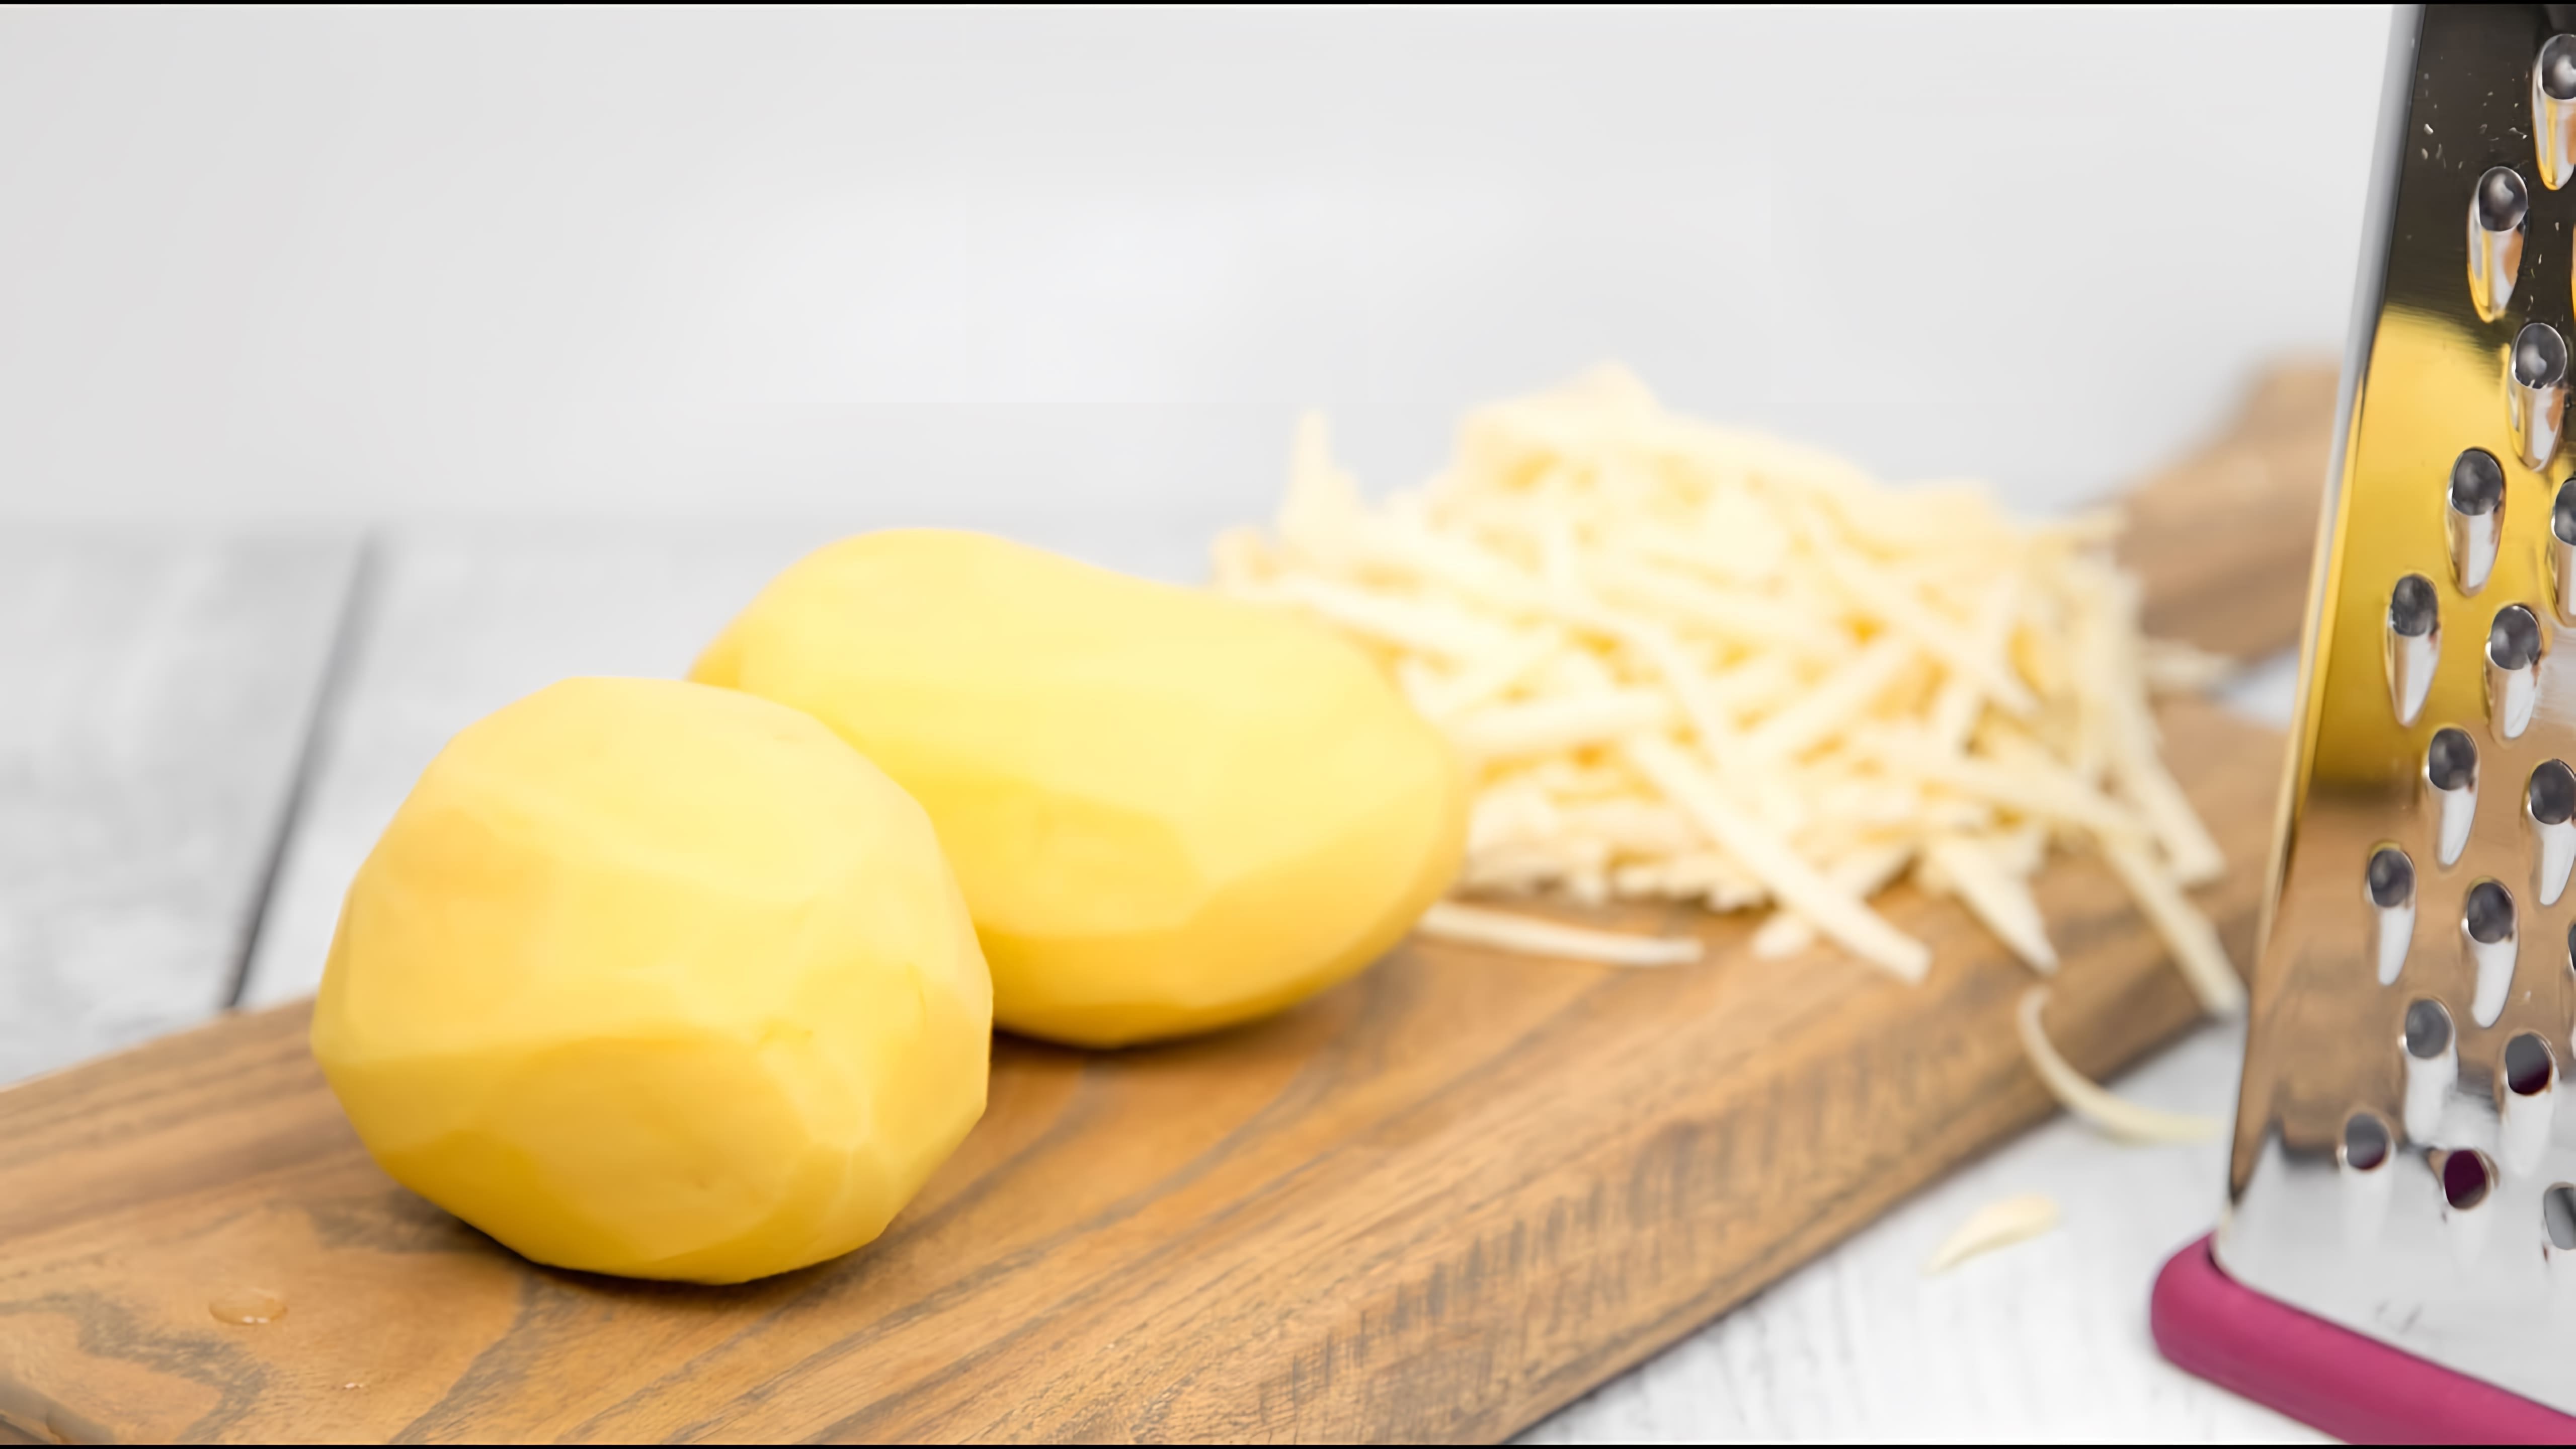 В этом видео демонстрируется рецепт быстрого и вкусного завтрака, который готовится всего из двух ингредиентов - картофеля и сыра